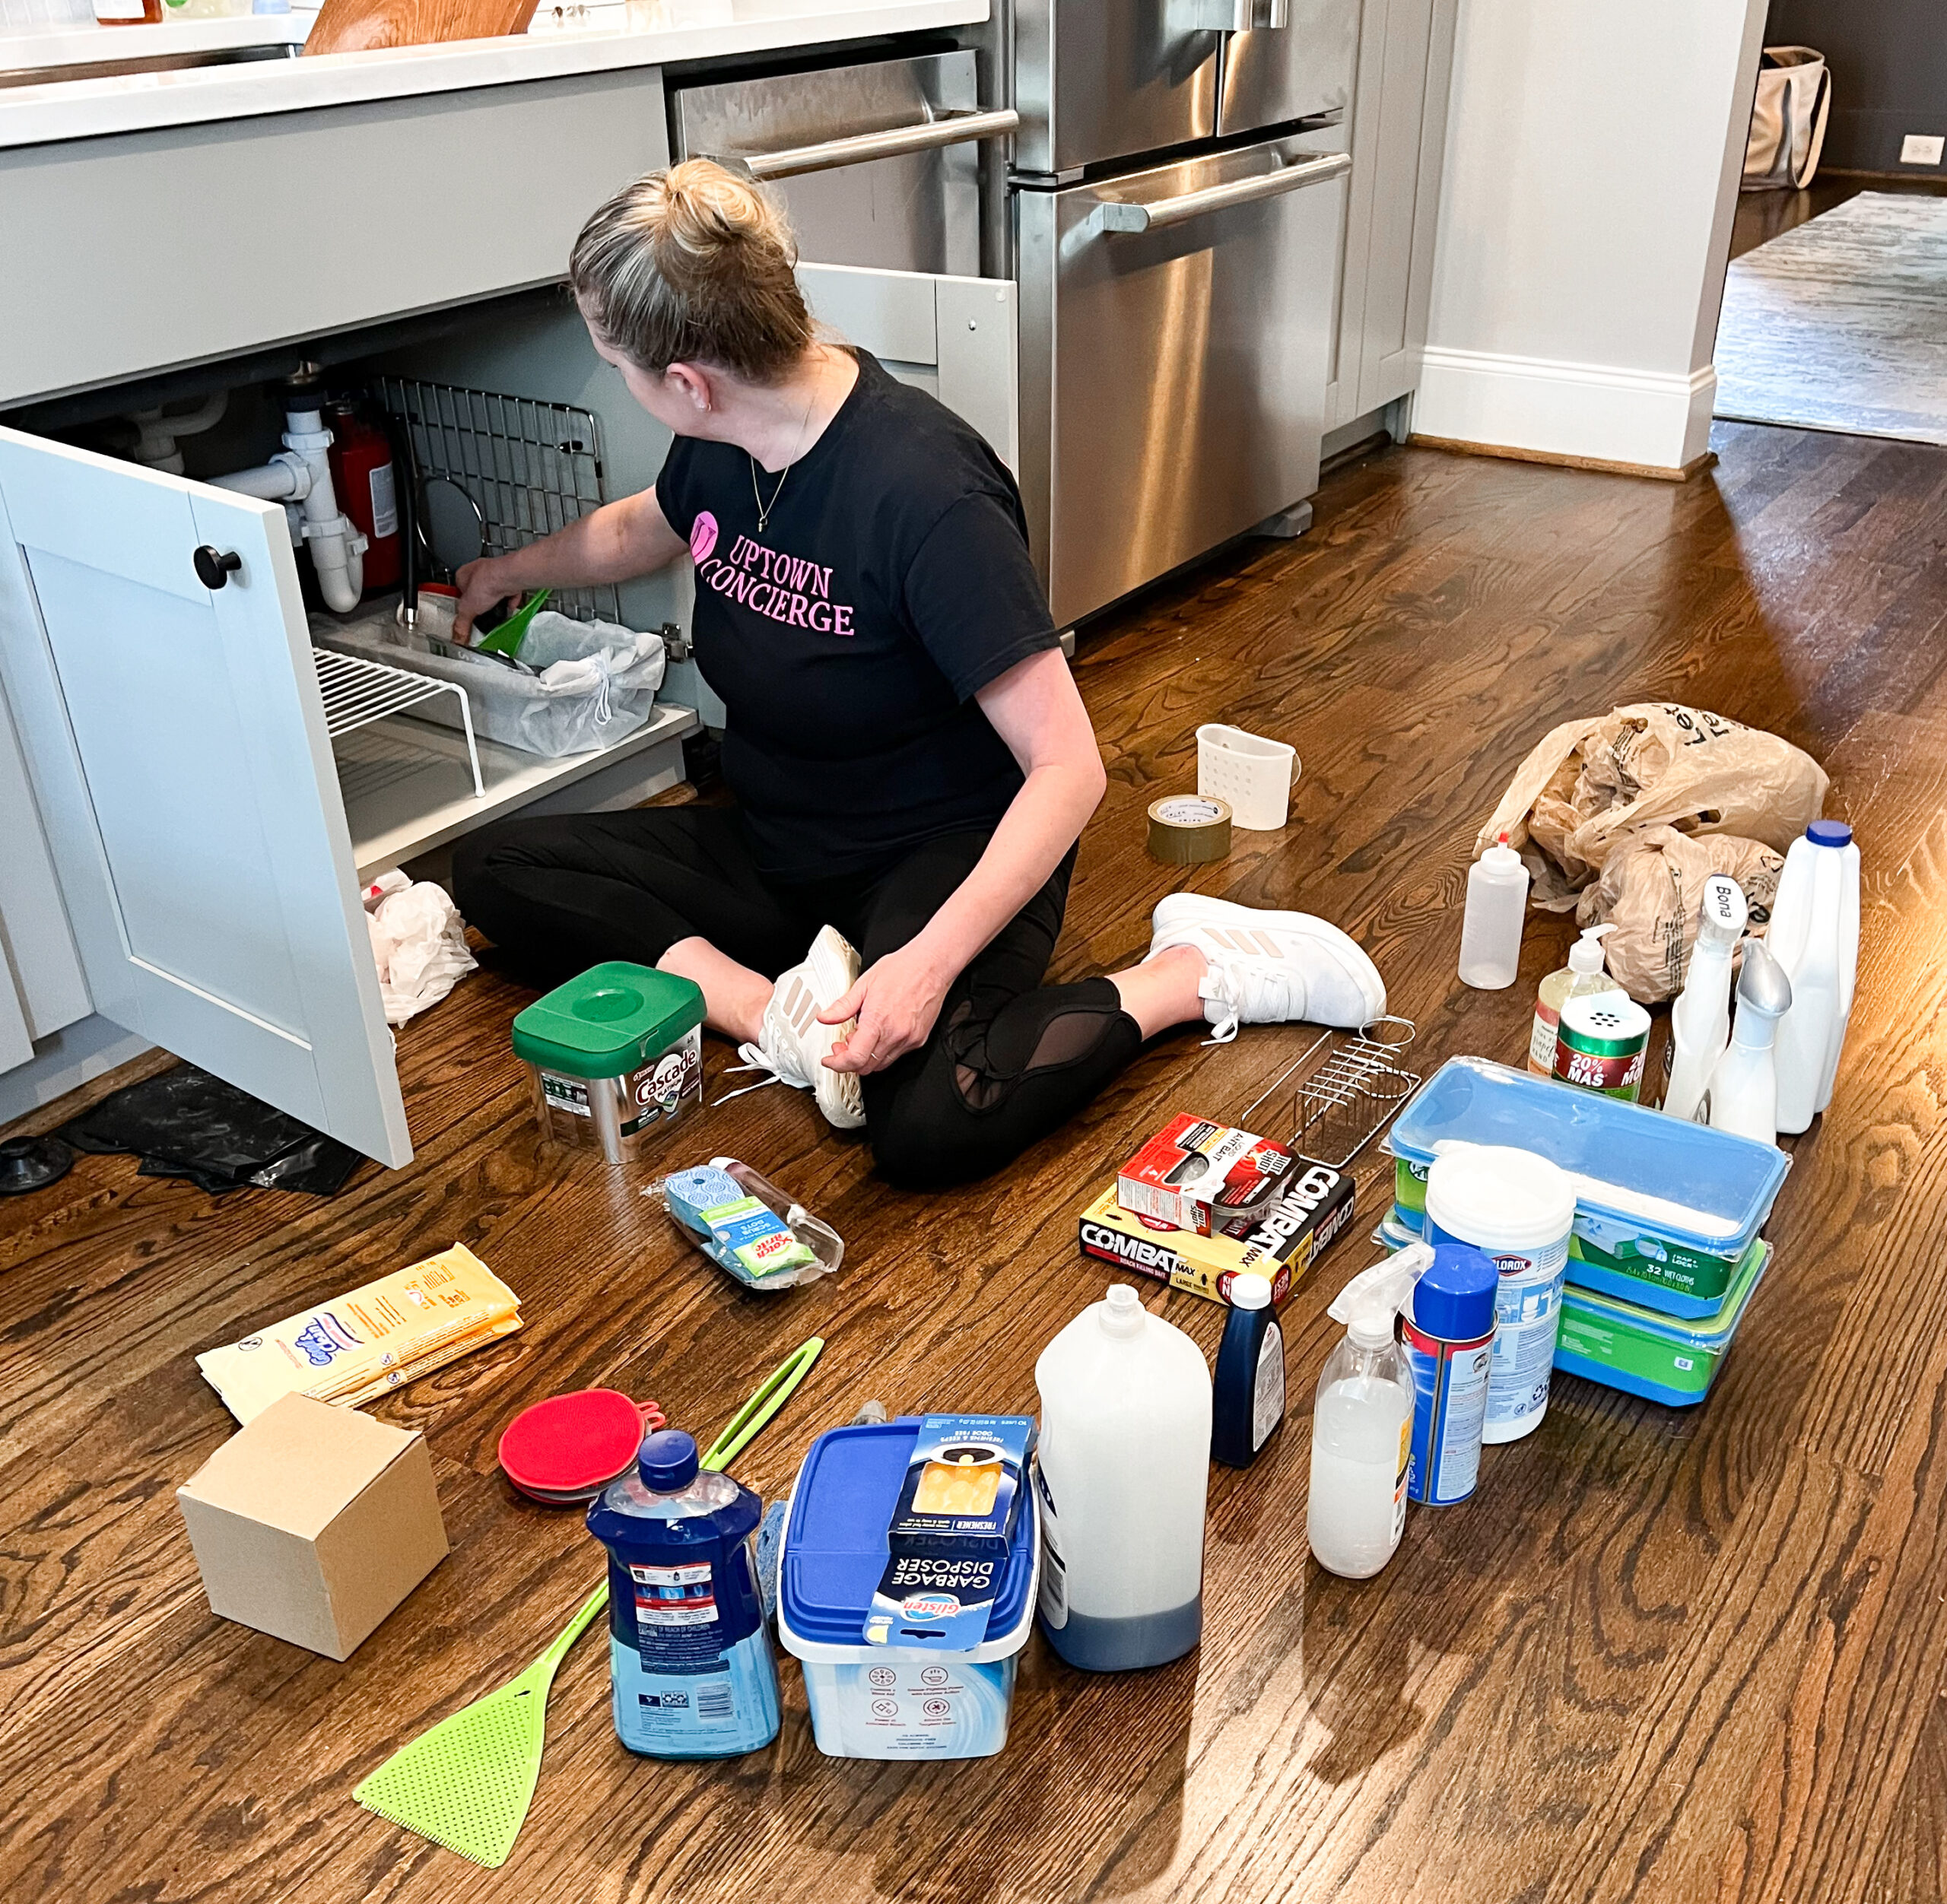 UpTown Concierge Professional Organizer decluttering under the kitchen sink